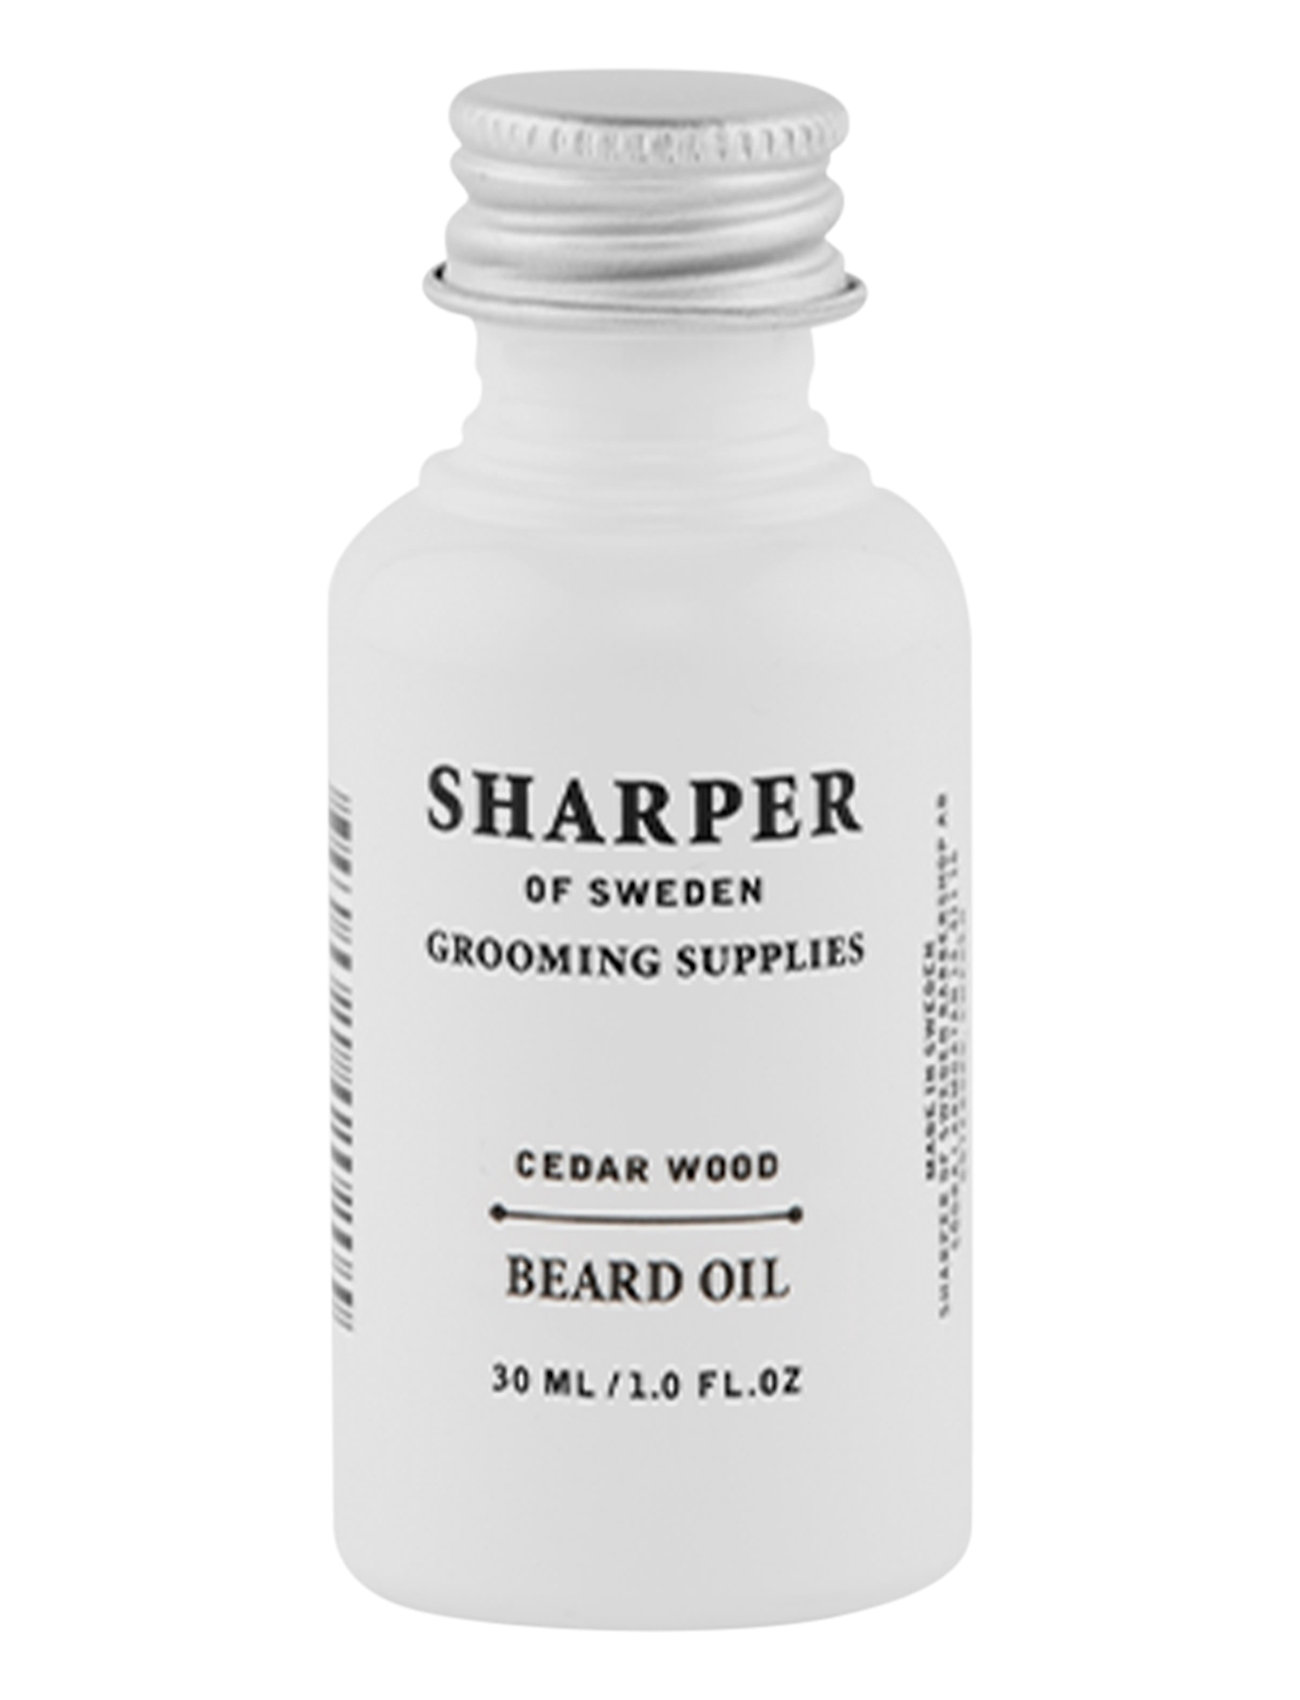 Sharper Beard Oil Cedar Wood Beauty Men Beard & Mustache Beard Oil Nude Sharper Grooming